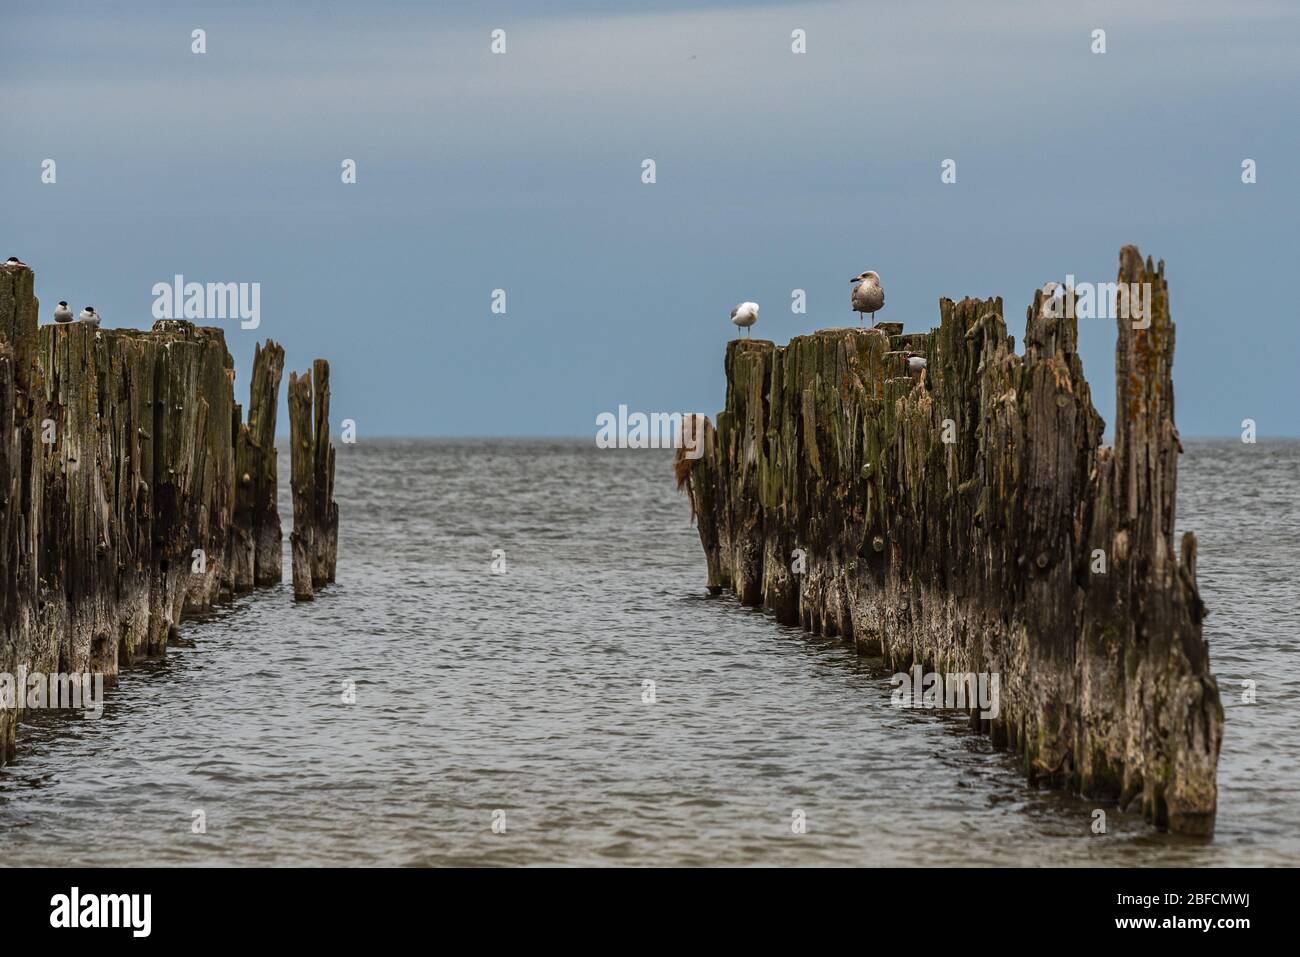 Alte Bootsliegeplätze an den Ufern der Ostsee und Seevögel, die darauf sitzen, als historisches Zeugnis der vergangenen Fischerei Stockfoto